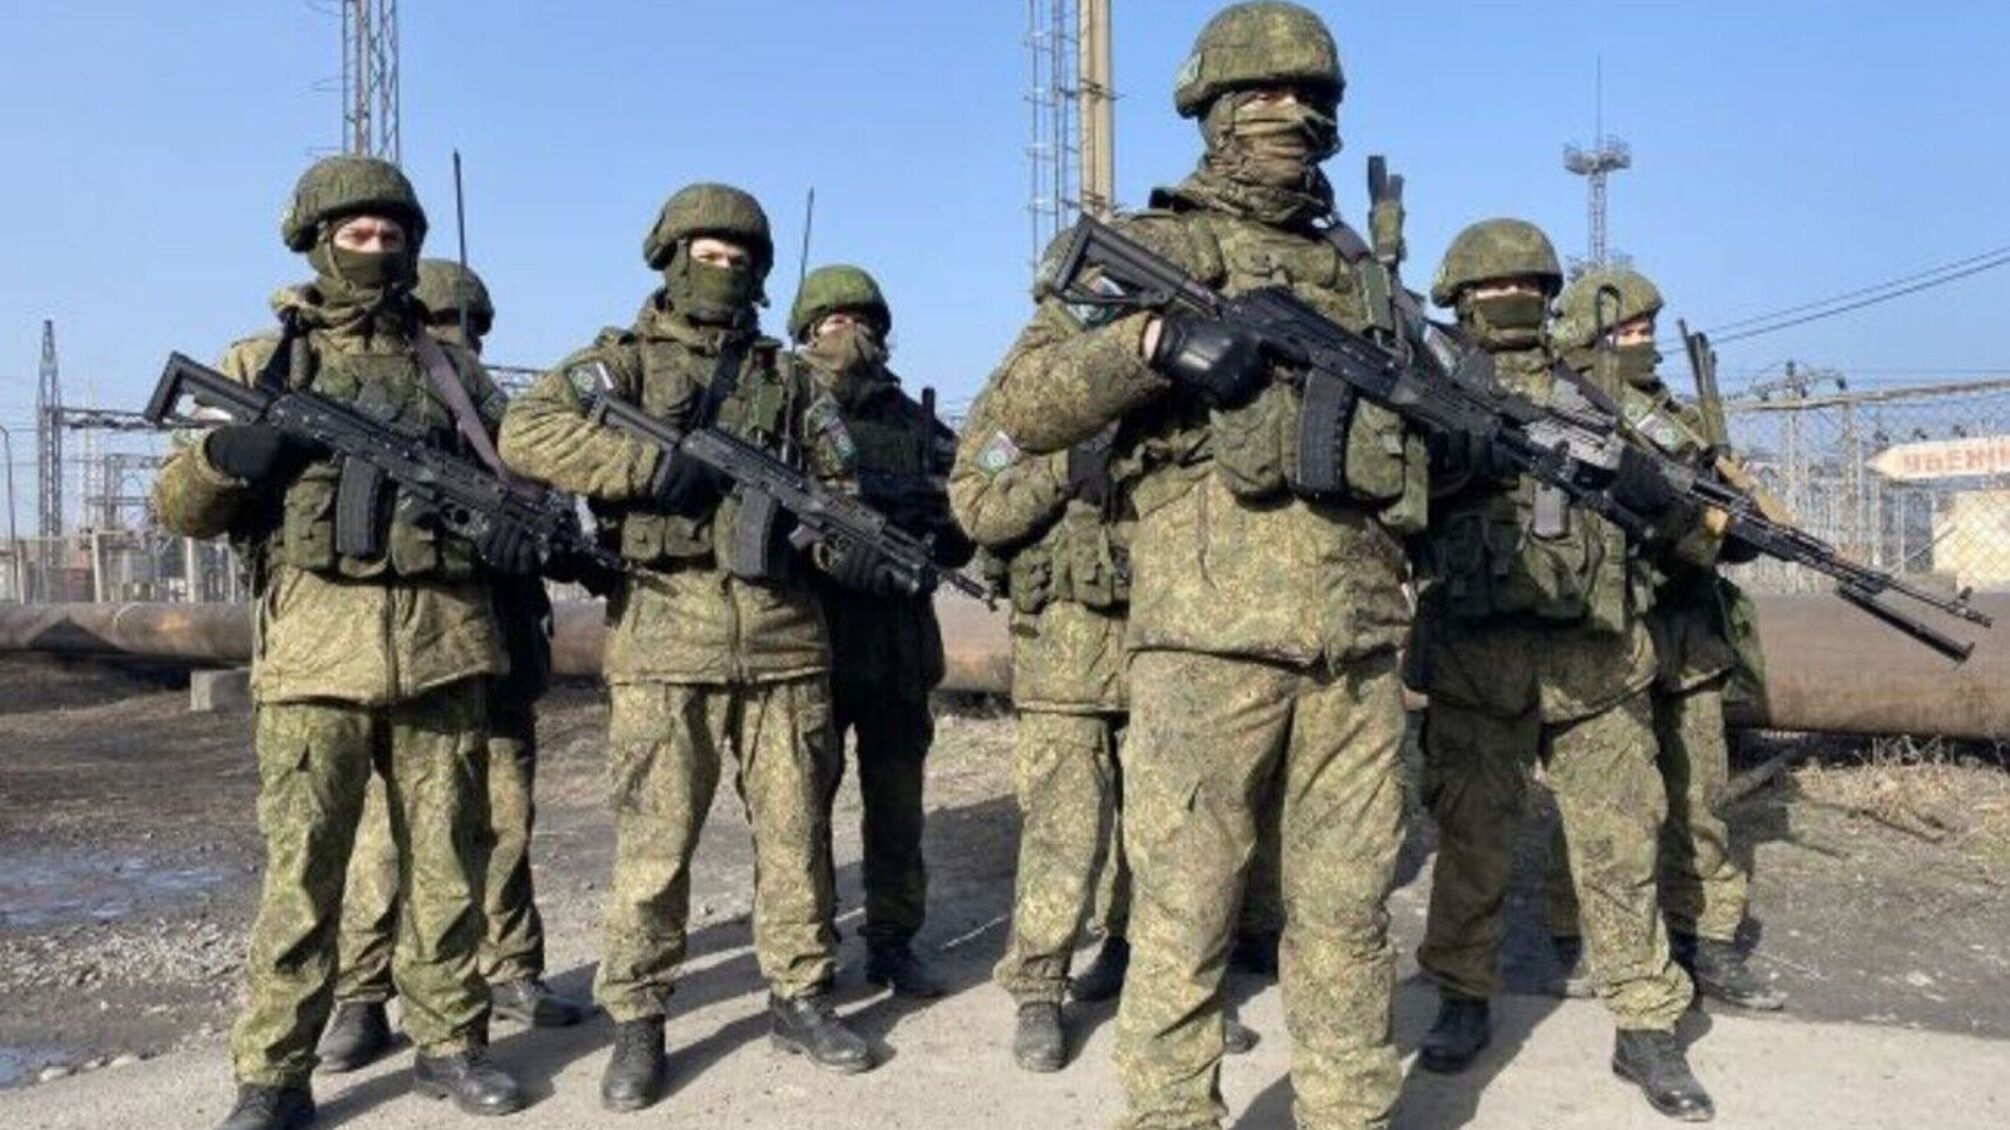 Генштаб: на Донецком направлении враг продолжает сосредотачивать основные усилия